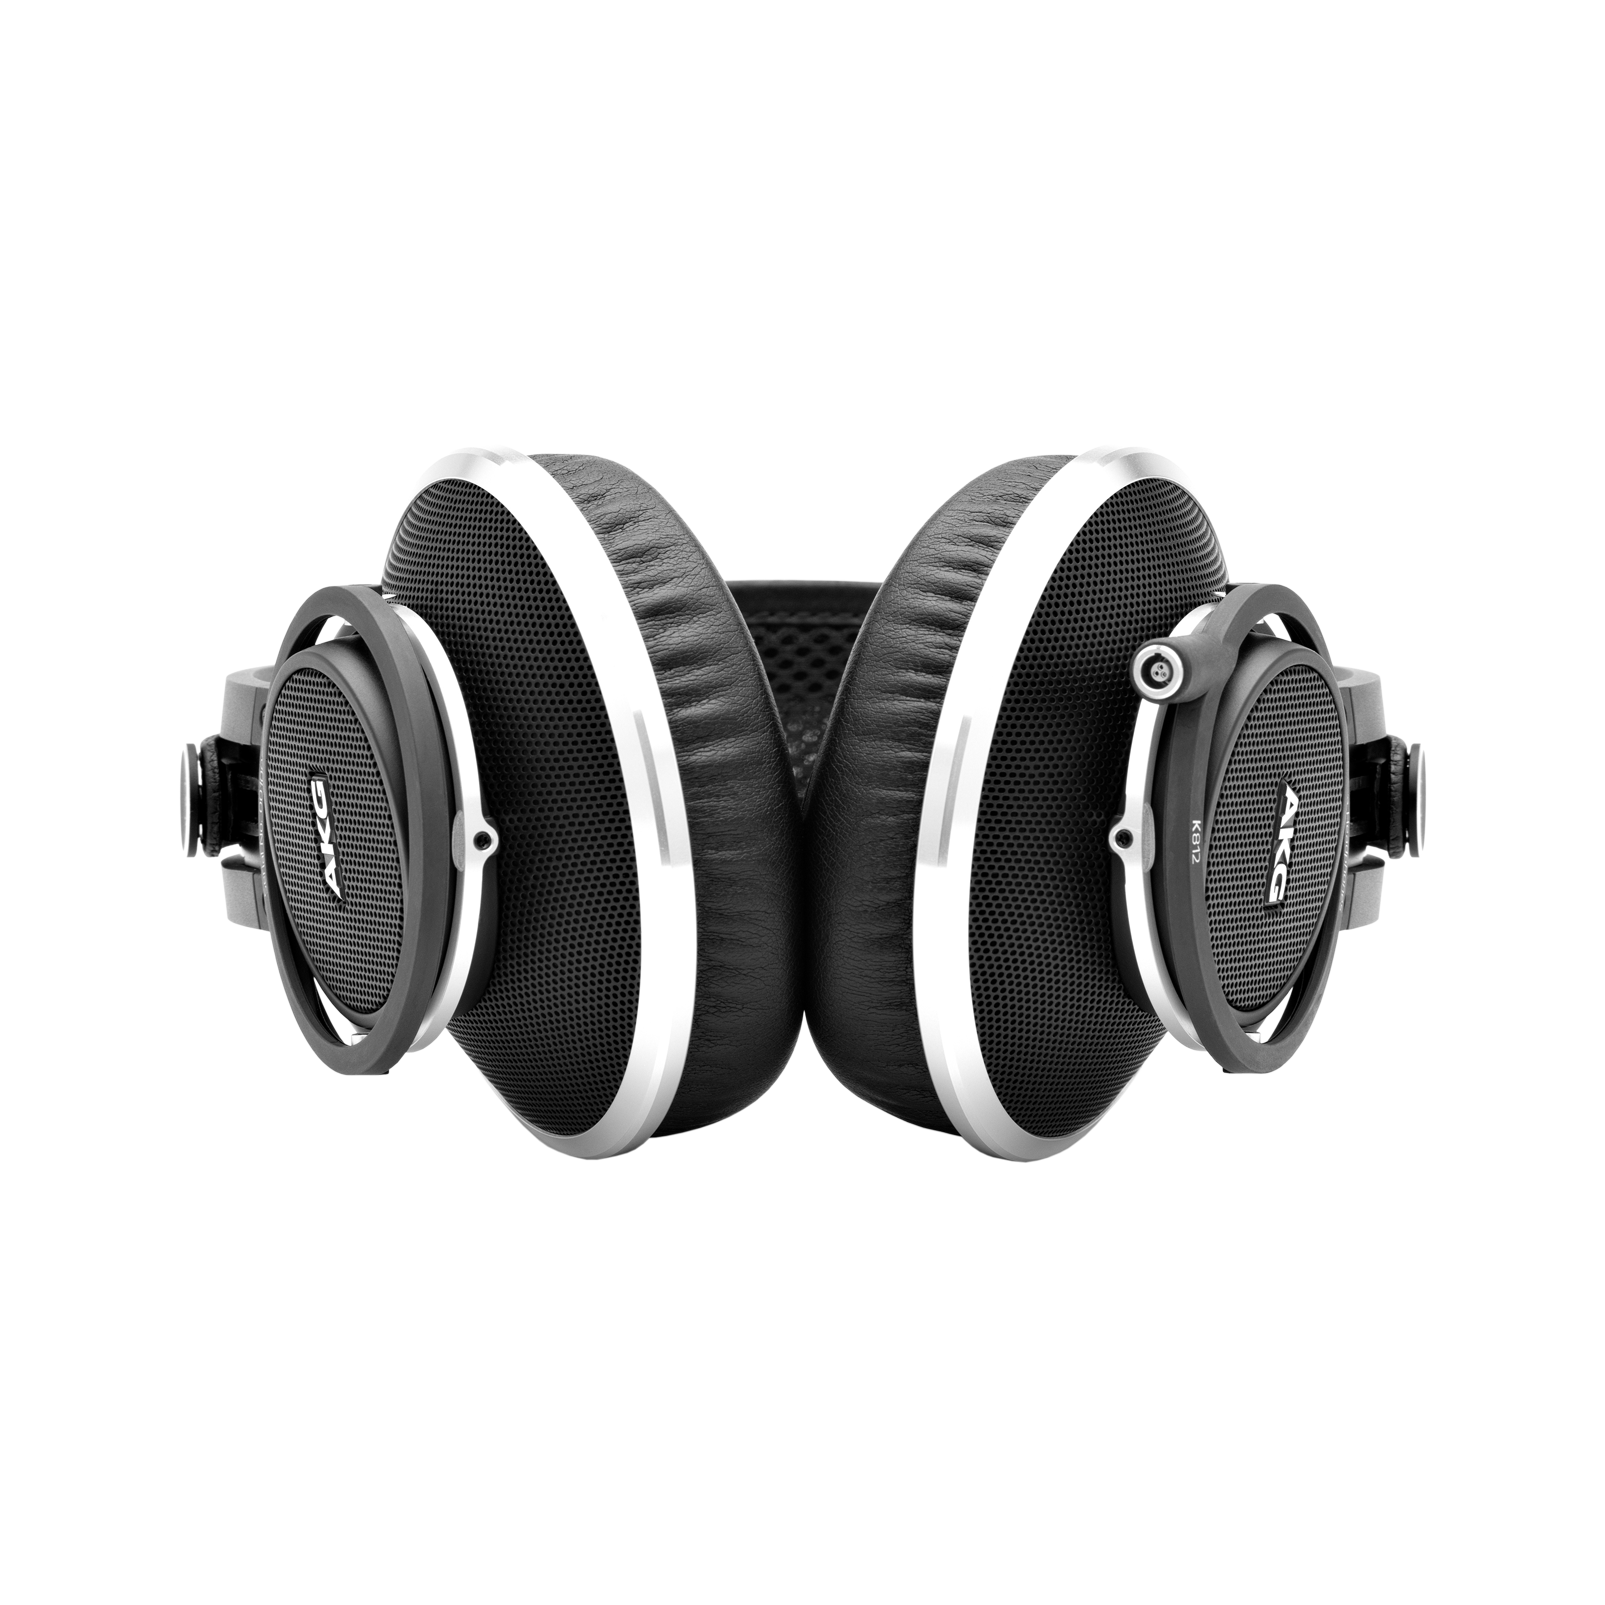 K812 - Black - Superior reference headphones - Detailshot 1